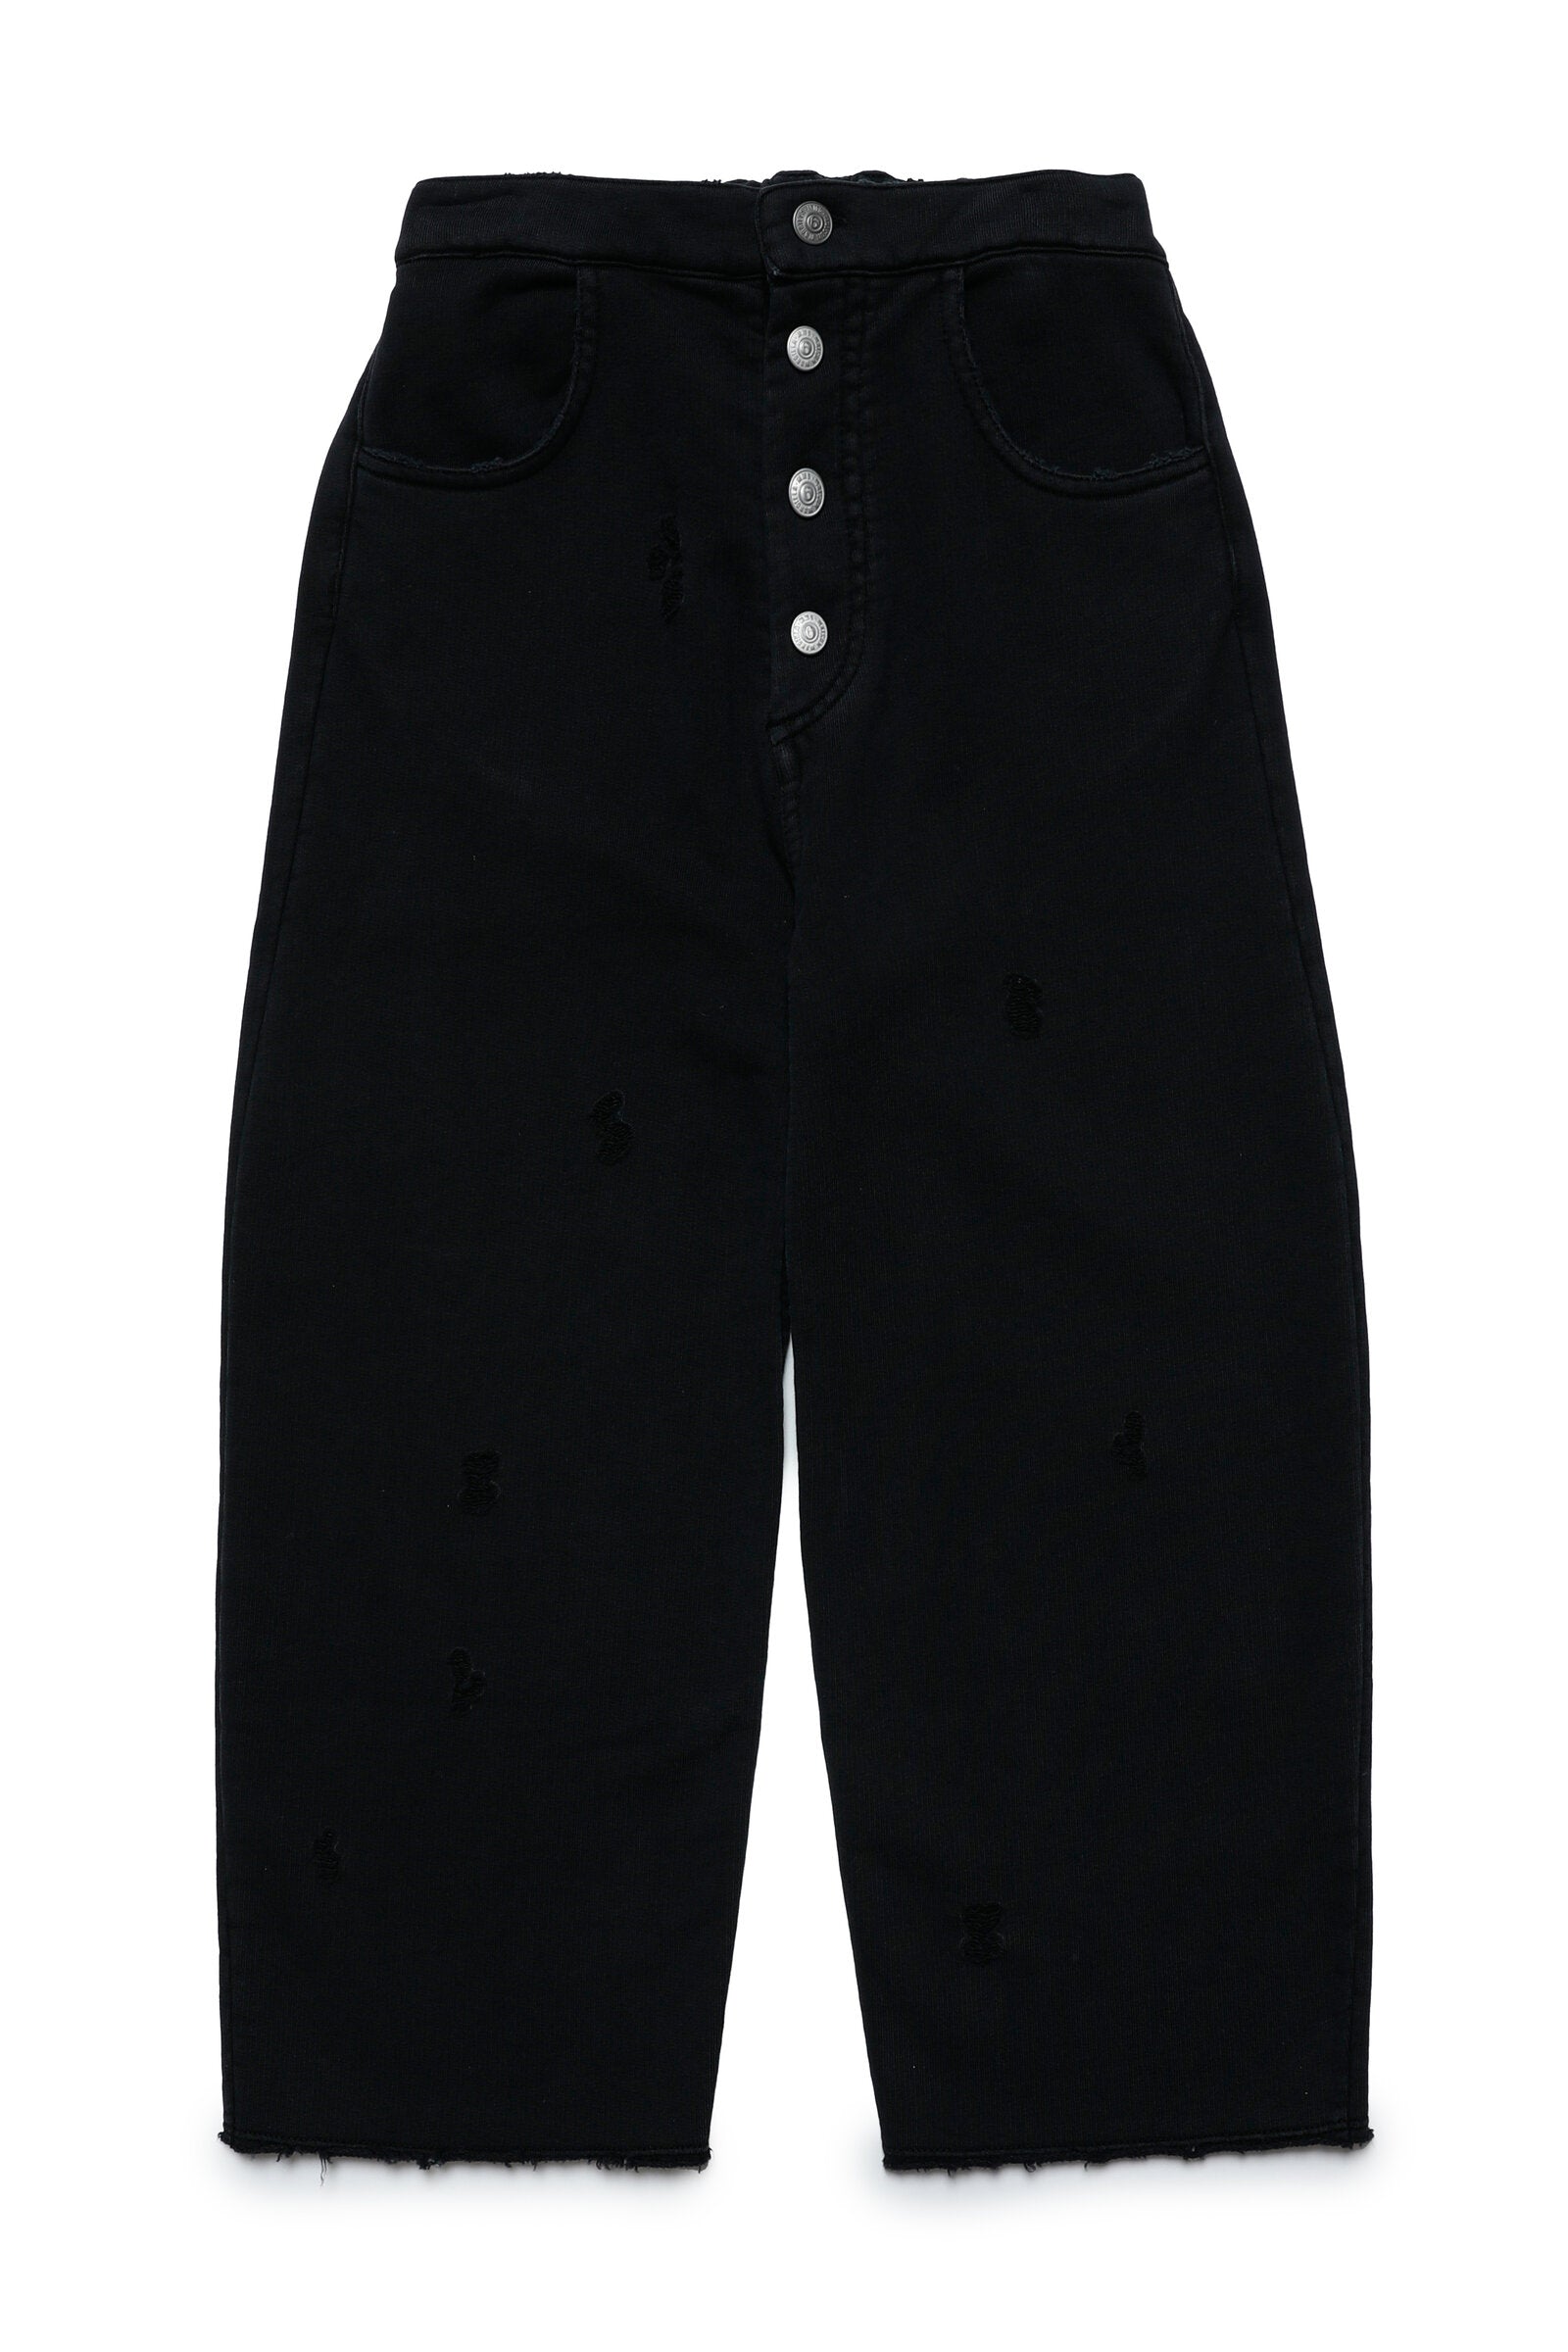 Pantalones de 5 bolsillos en felpa con rotos de efecto vintage